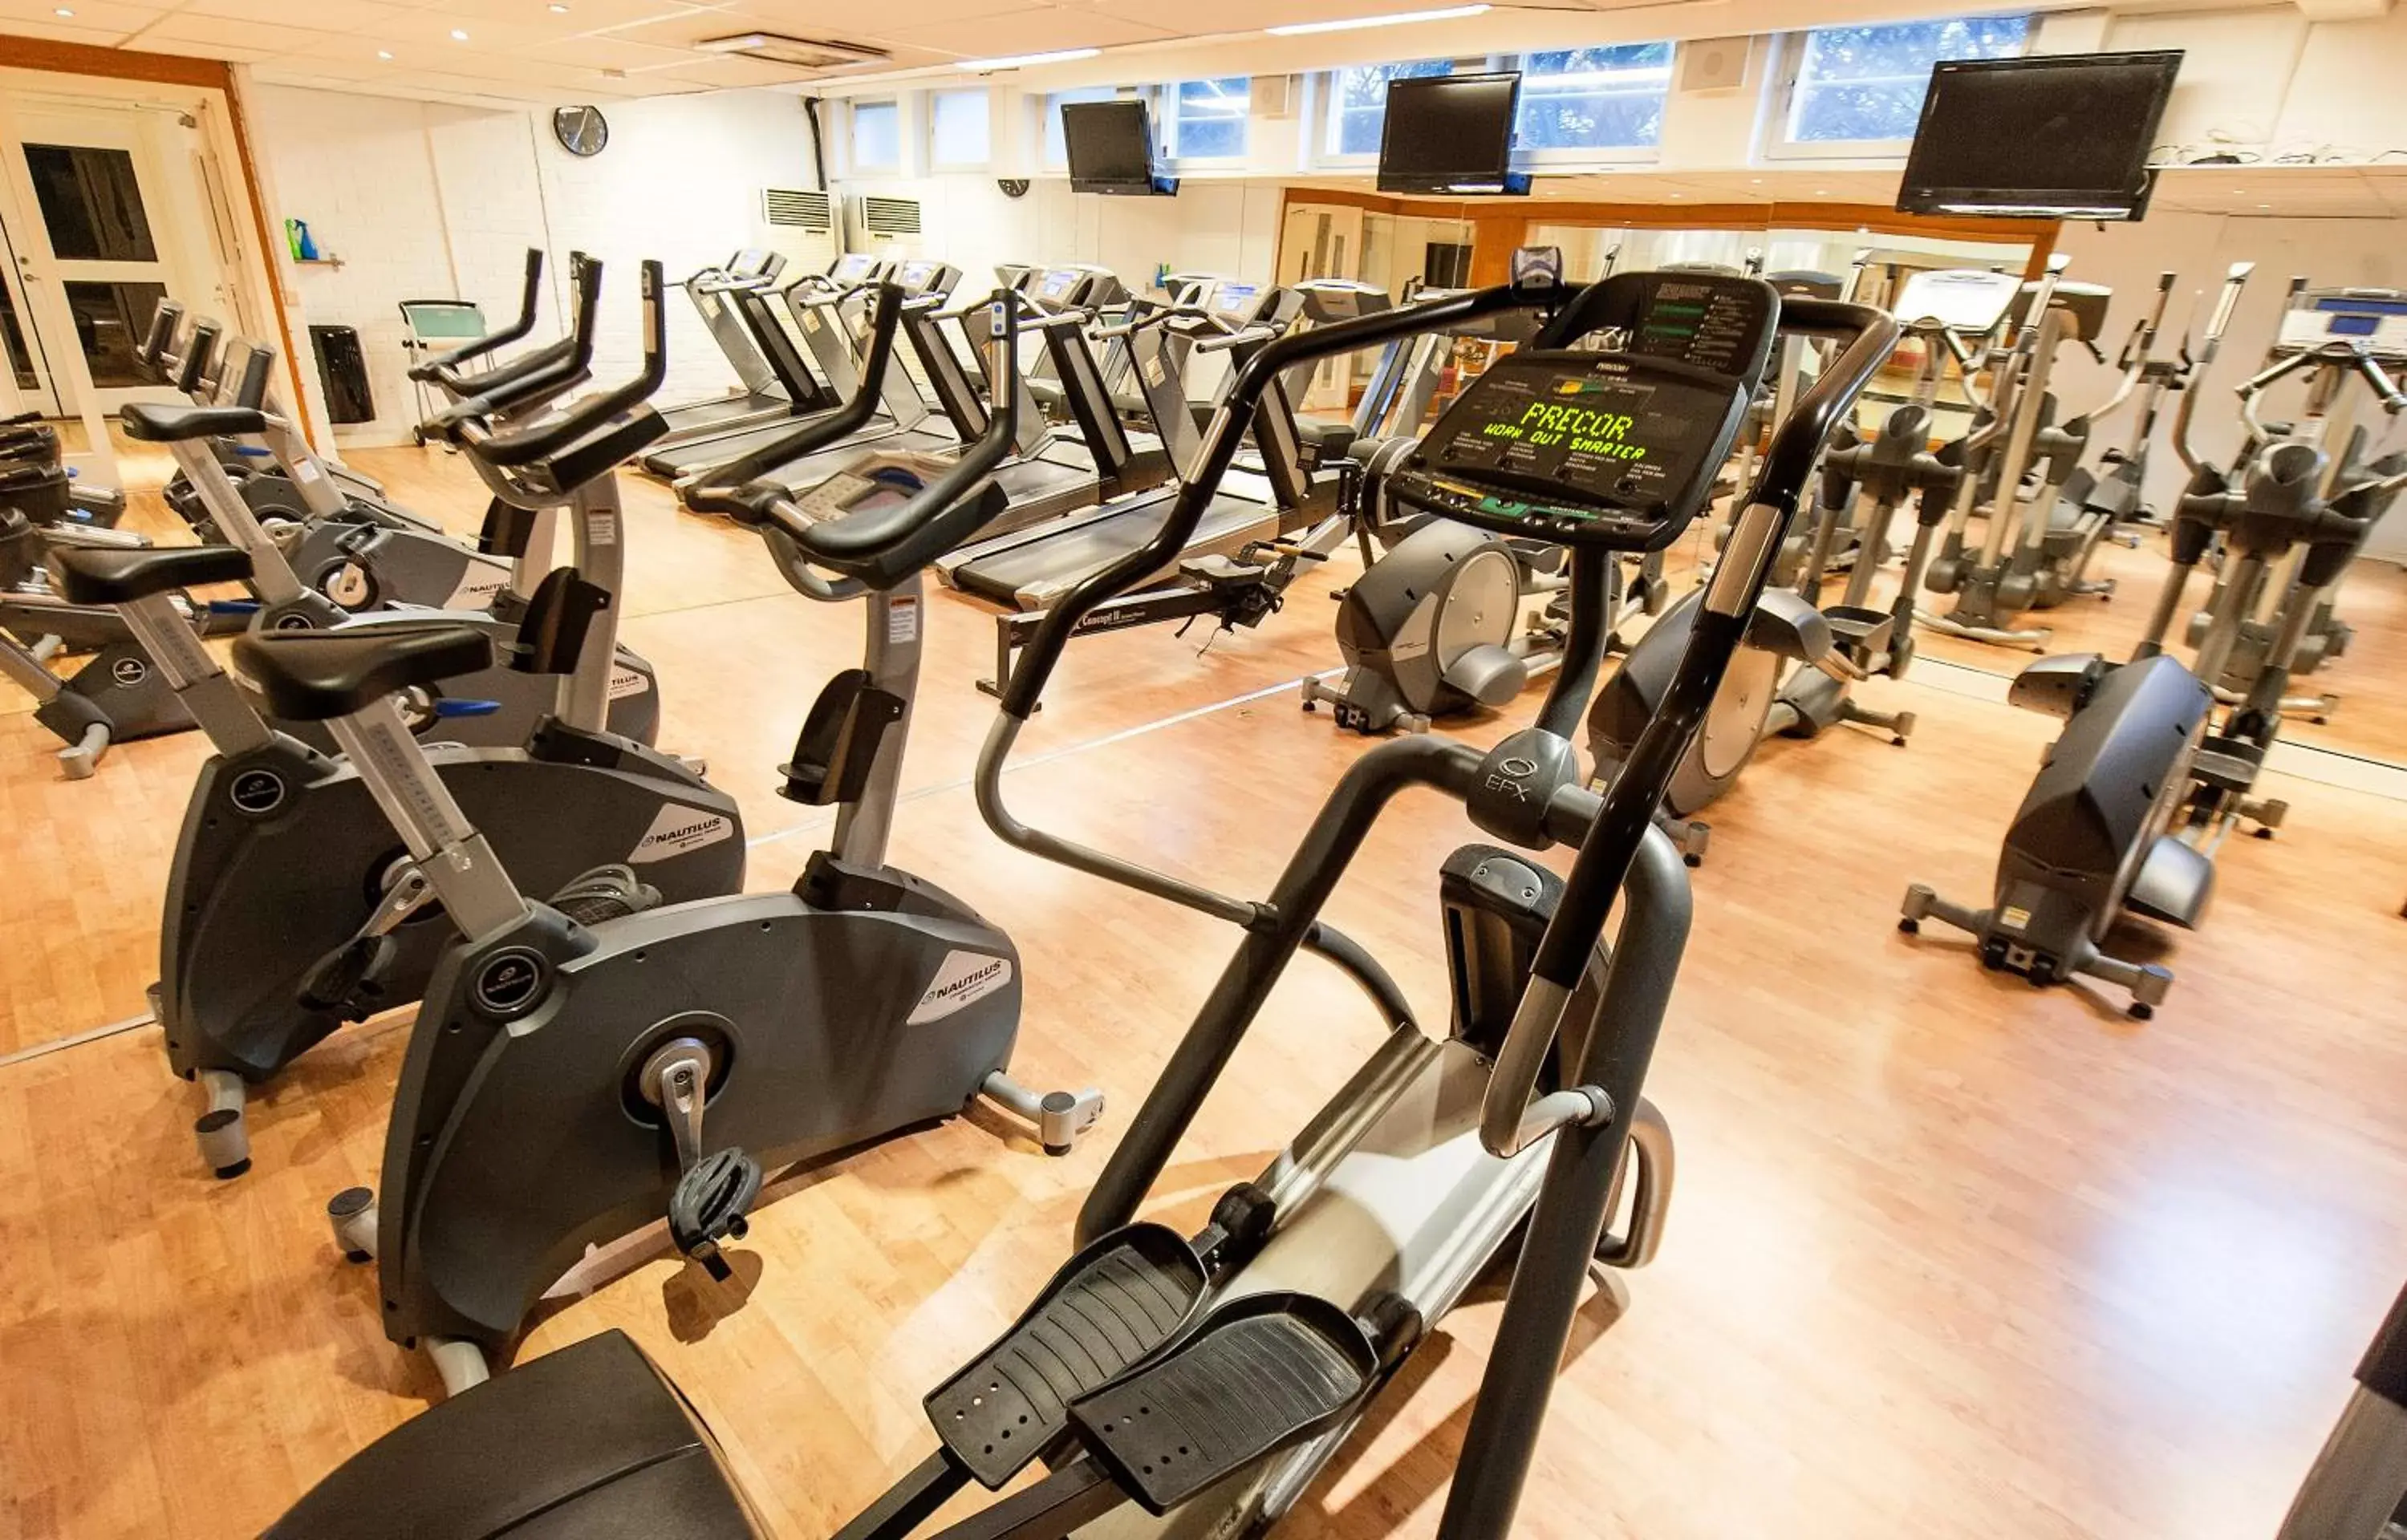 Fitness centre/facilities, Fitness Center/Facilities in Good Morning+ Hägersten